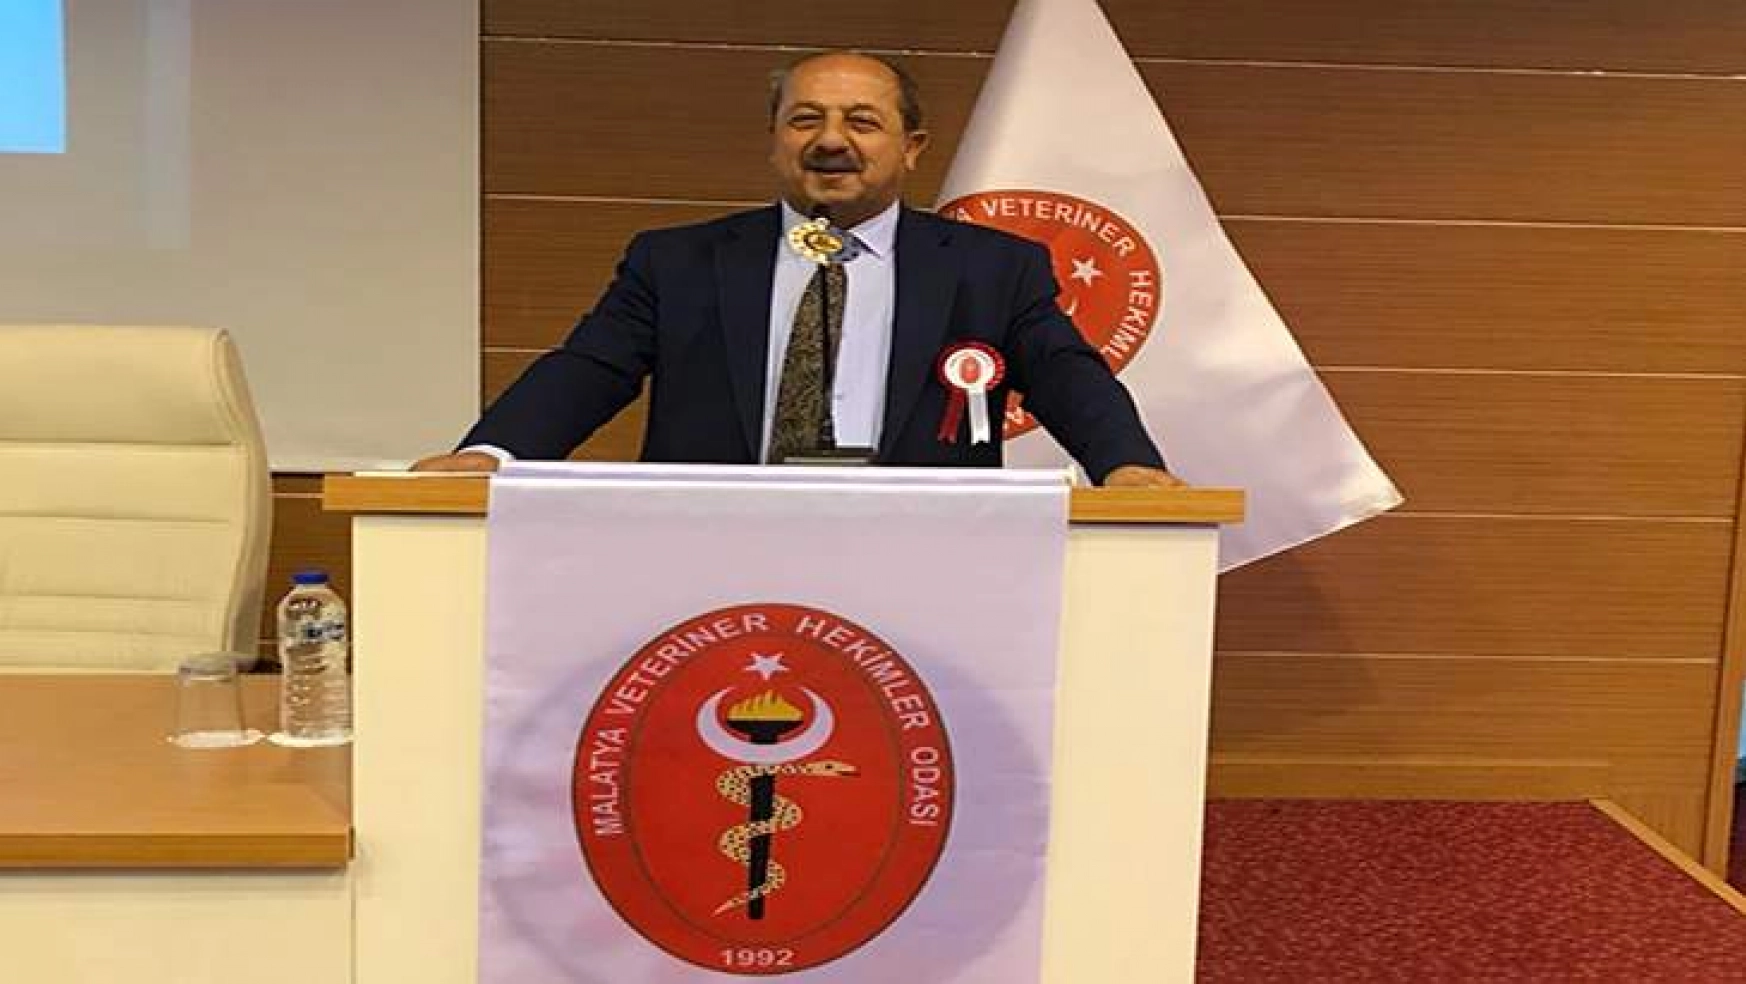 Malatya Veteriner Hekimler Odası Yeni Başkanı Ergün Koşar Oldu.